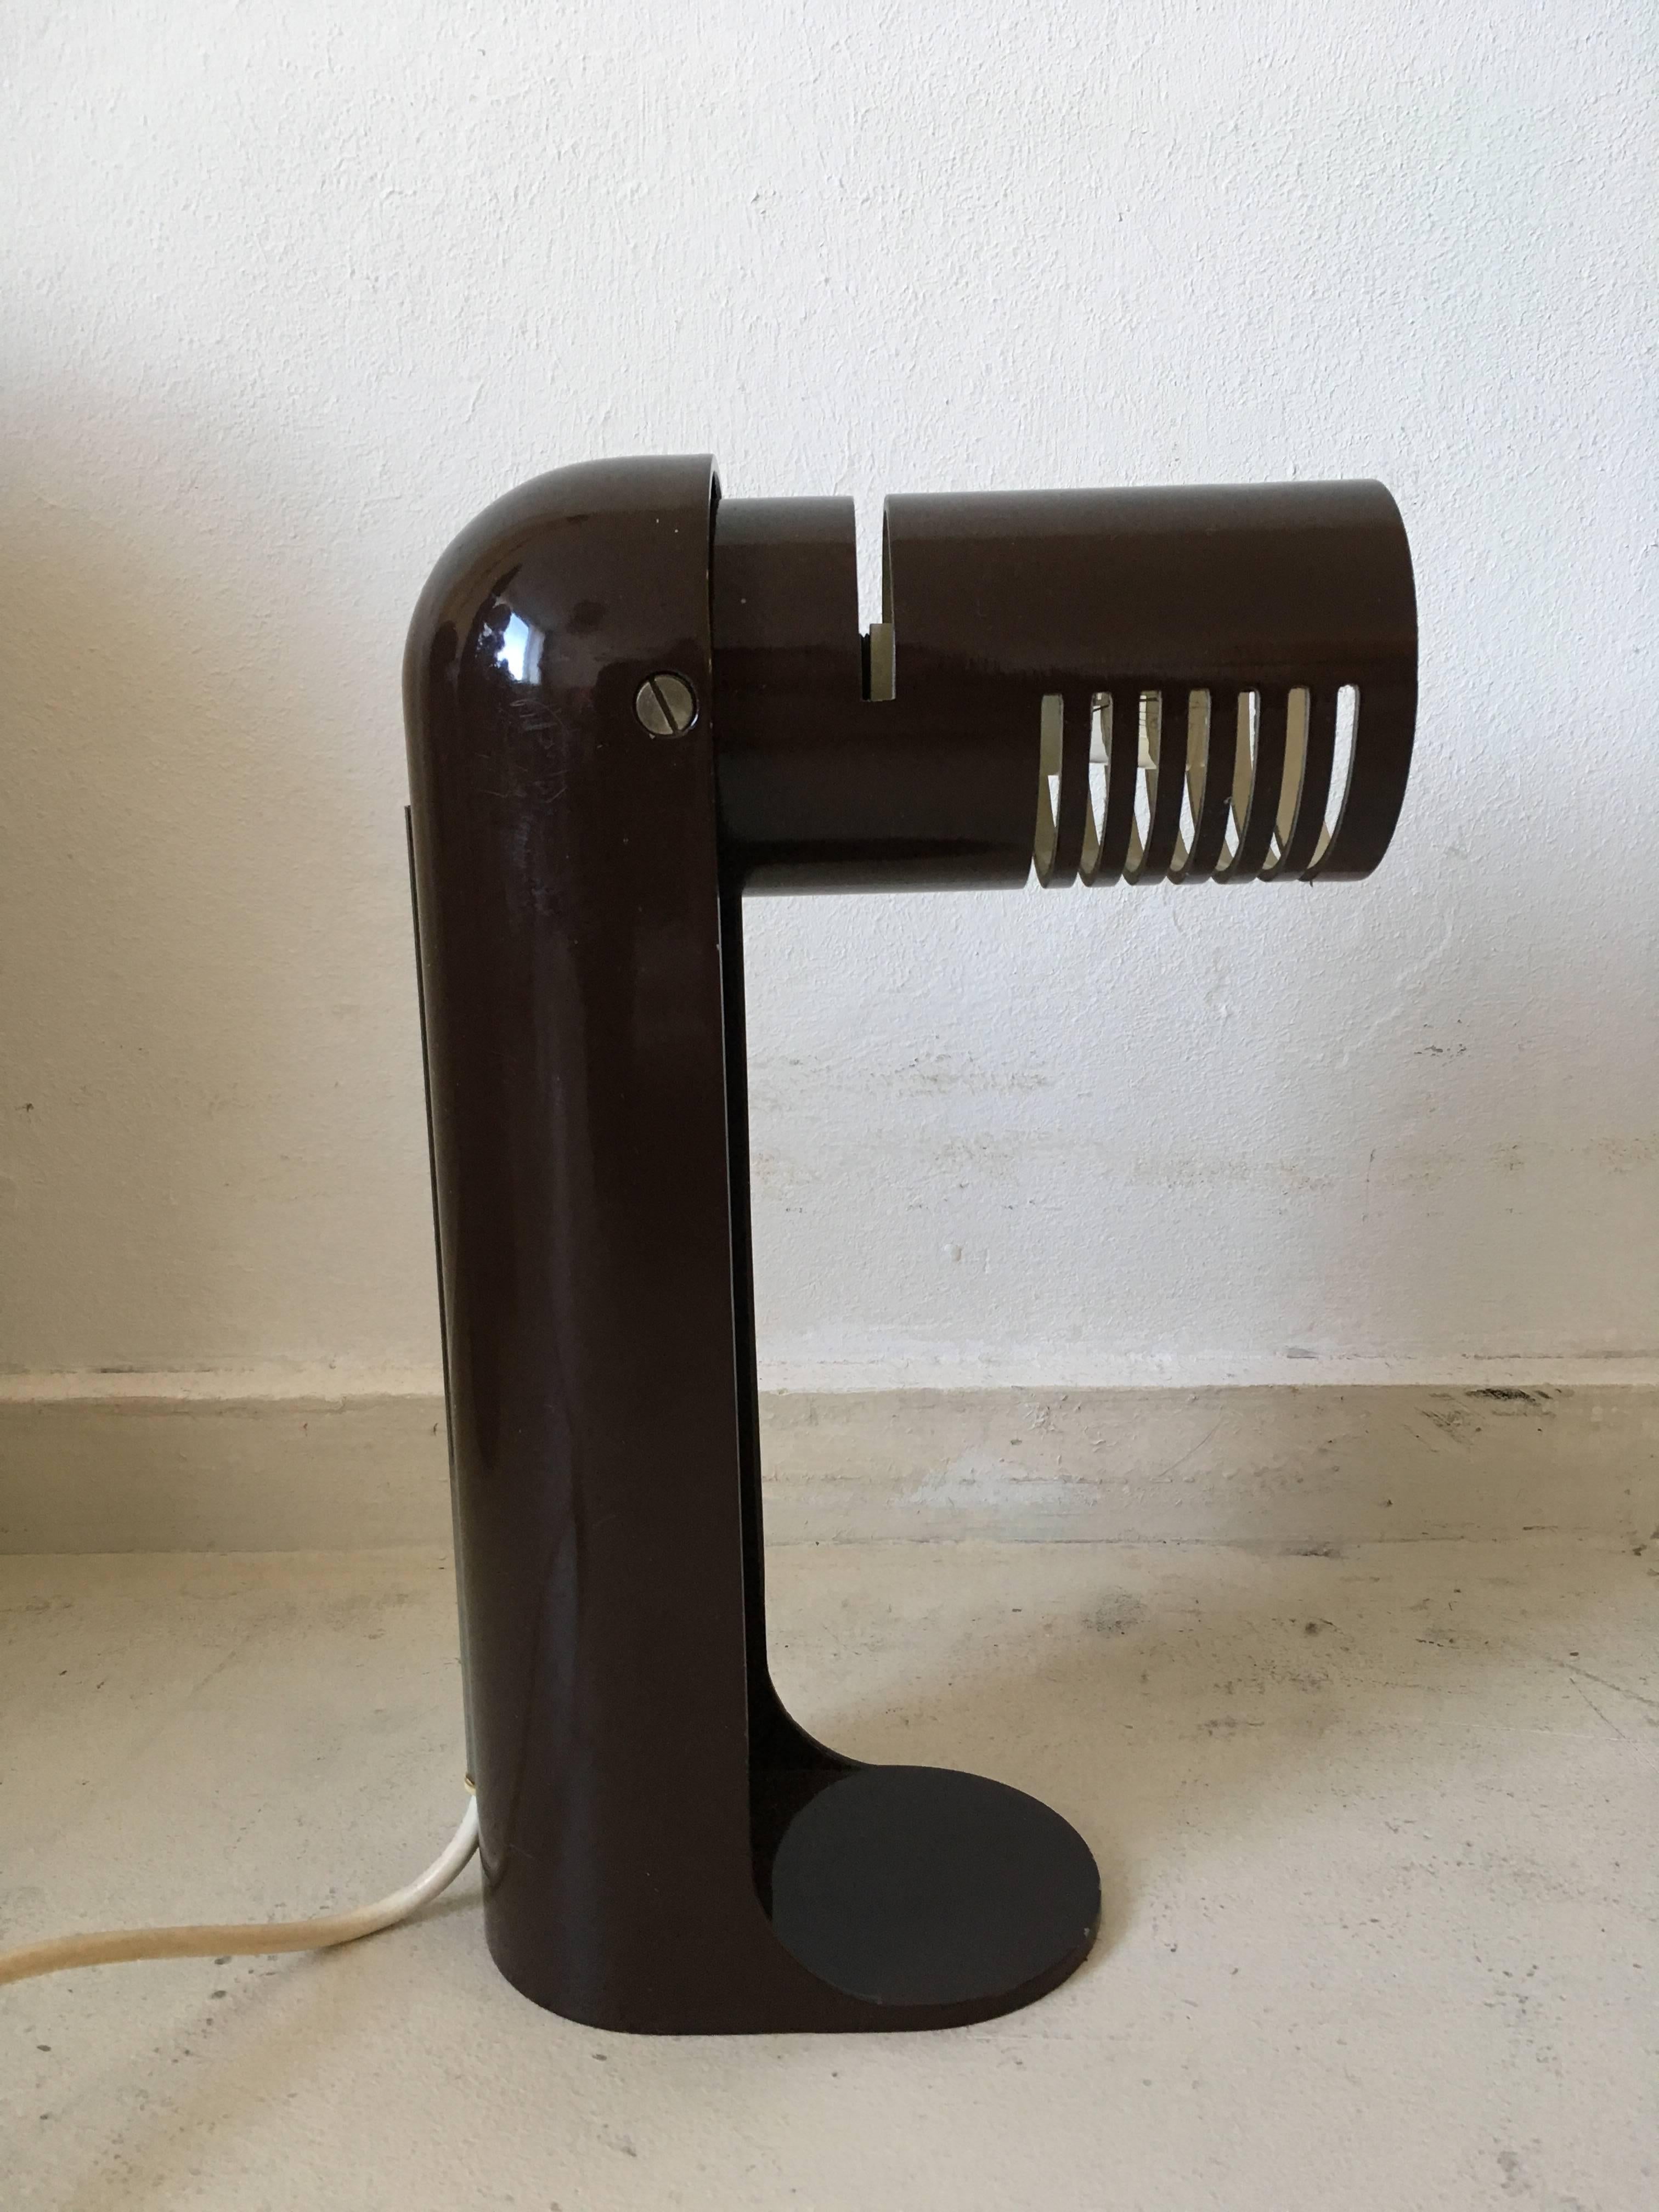 Seltene Vintage-Schreibtischlampe, entworfen von Richard Carruthers für Leuka in Italien, ca. 1970er Jahre. 
Der Sockel ist aus braunem, emailliertem Metall und der Schirm kann herausgeklappt werden. Es befindet sich in einem hervorragenden Zustand